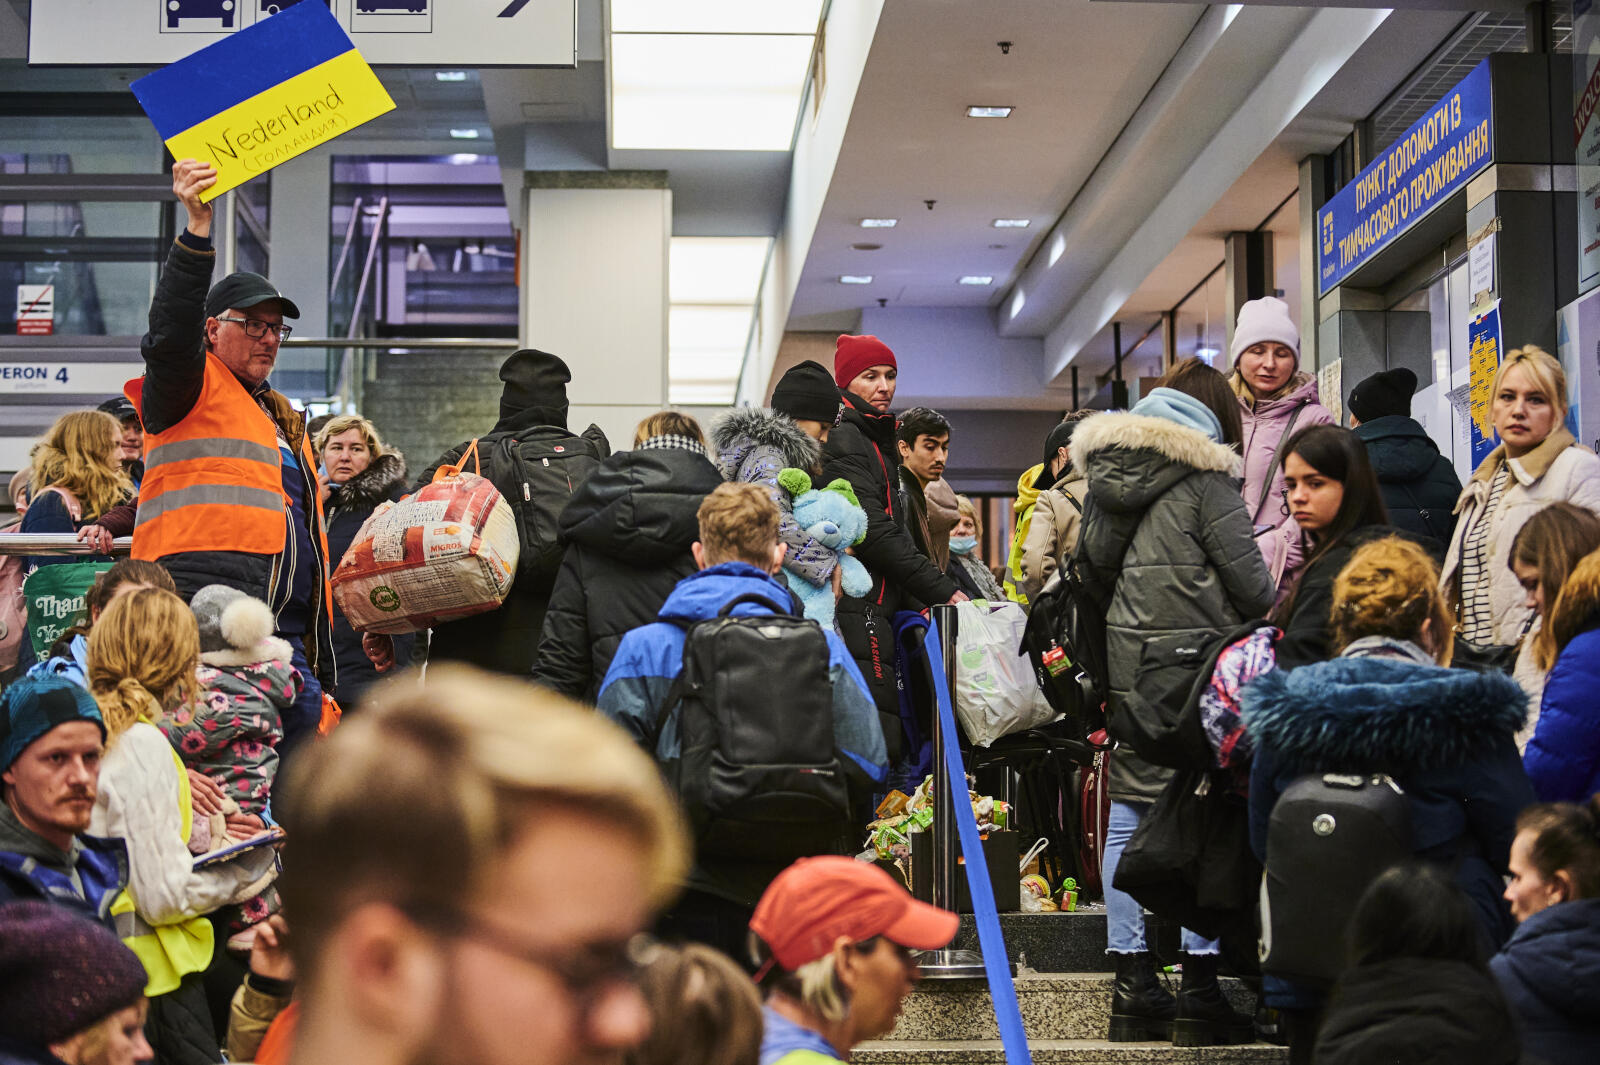 Op het station van Krakau worden vluchtelingen opgevangen. Ze worden vanaf het het station per bus vervoerd naar opvanglocaties in heel Europa